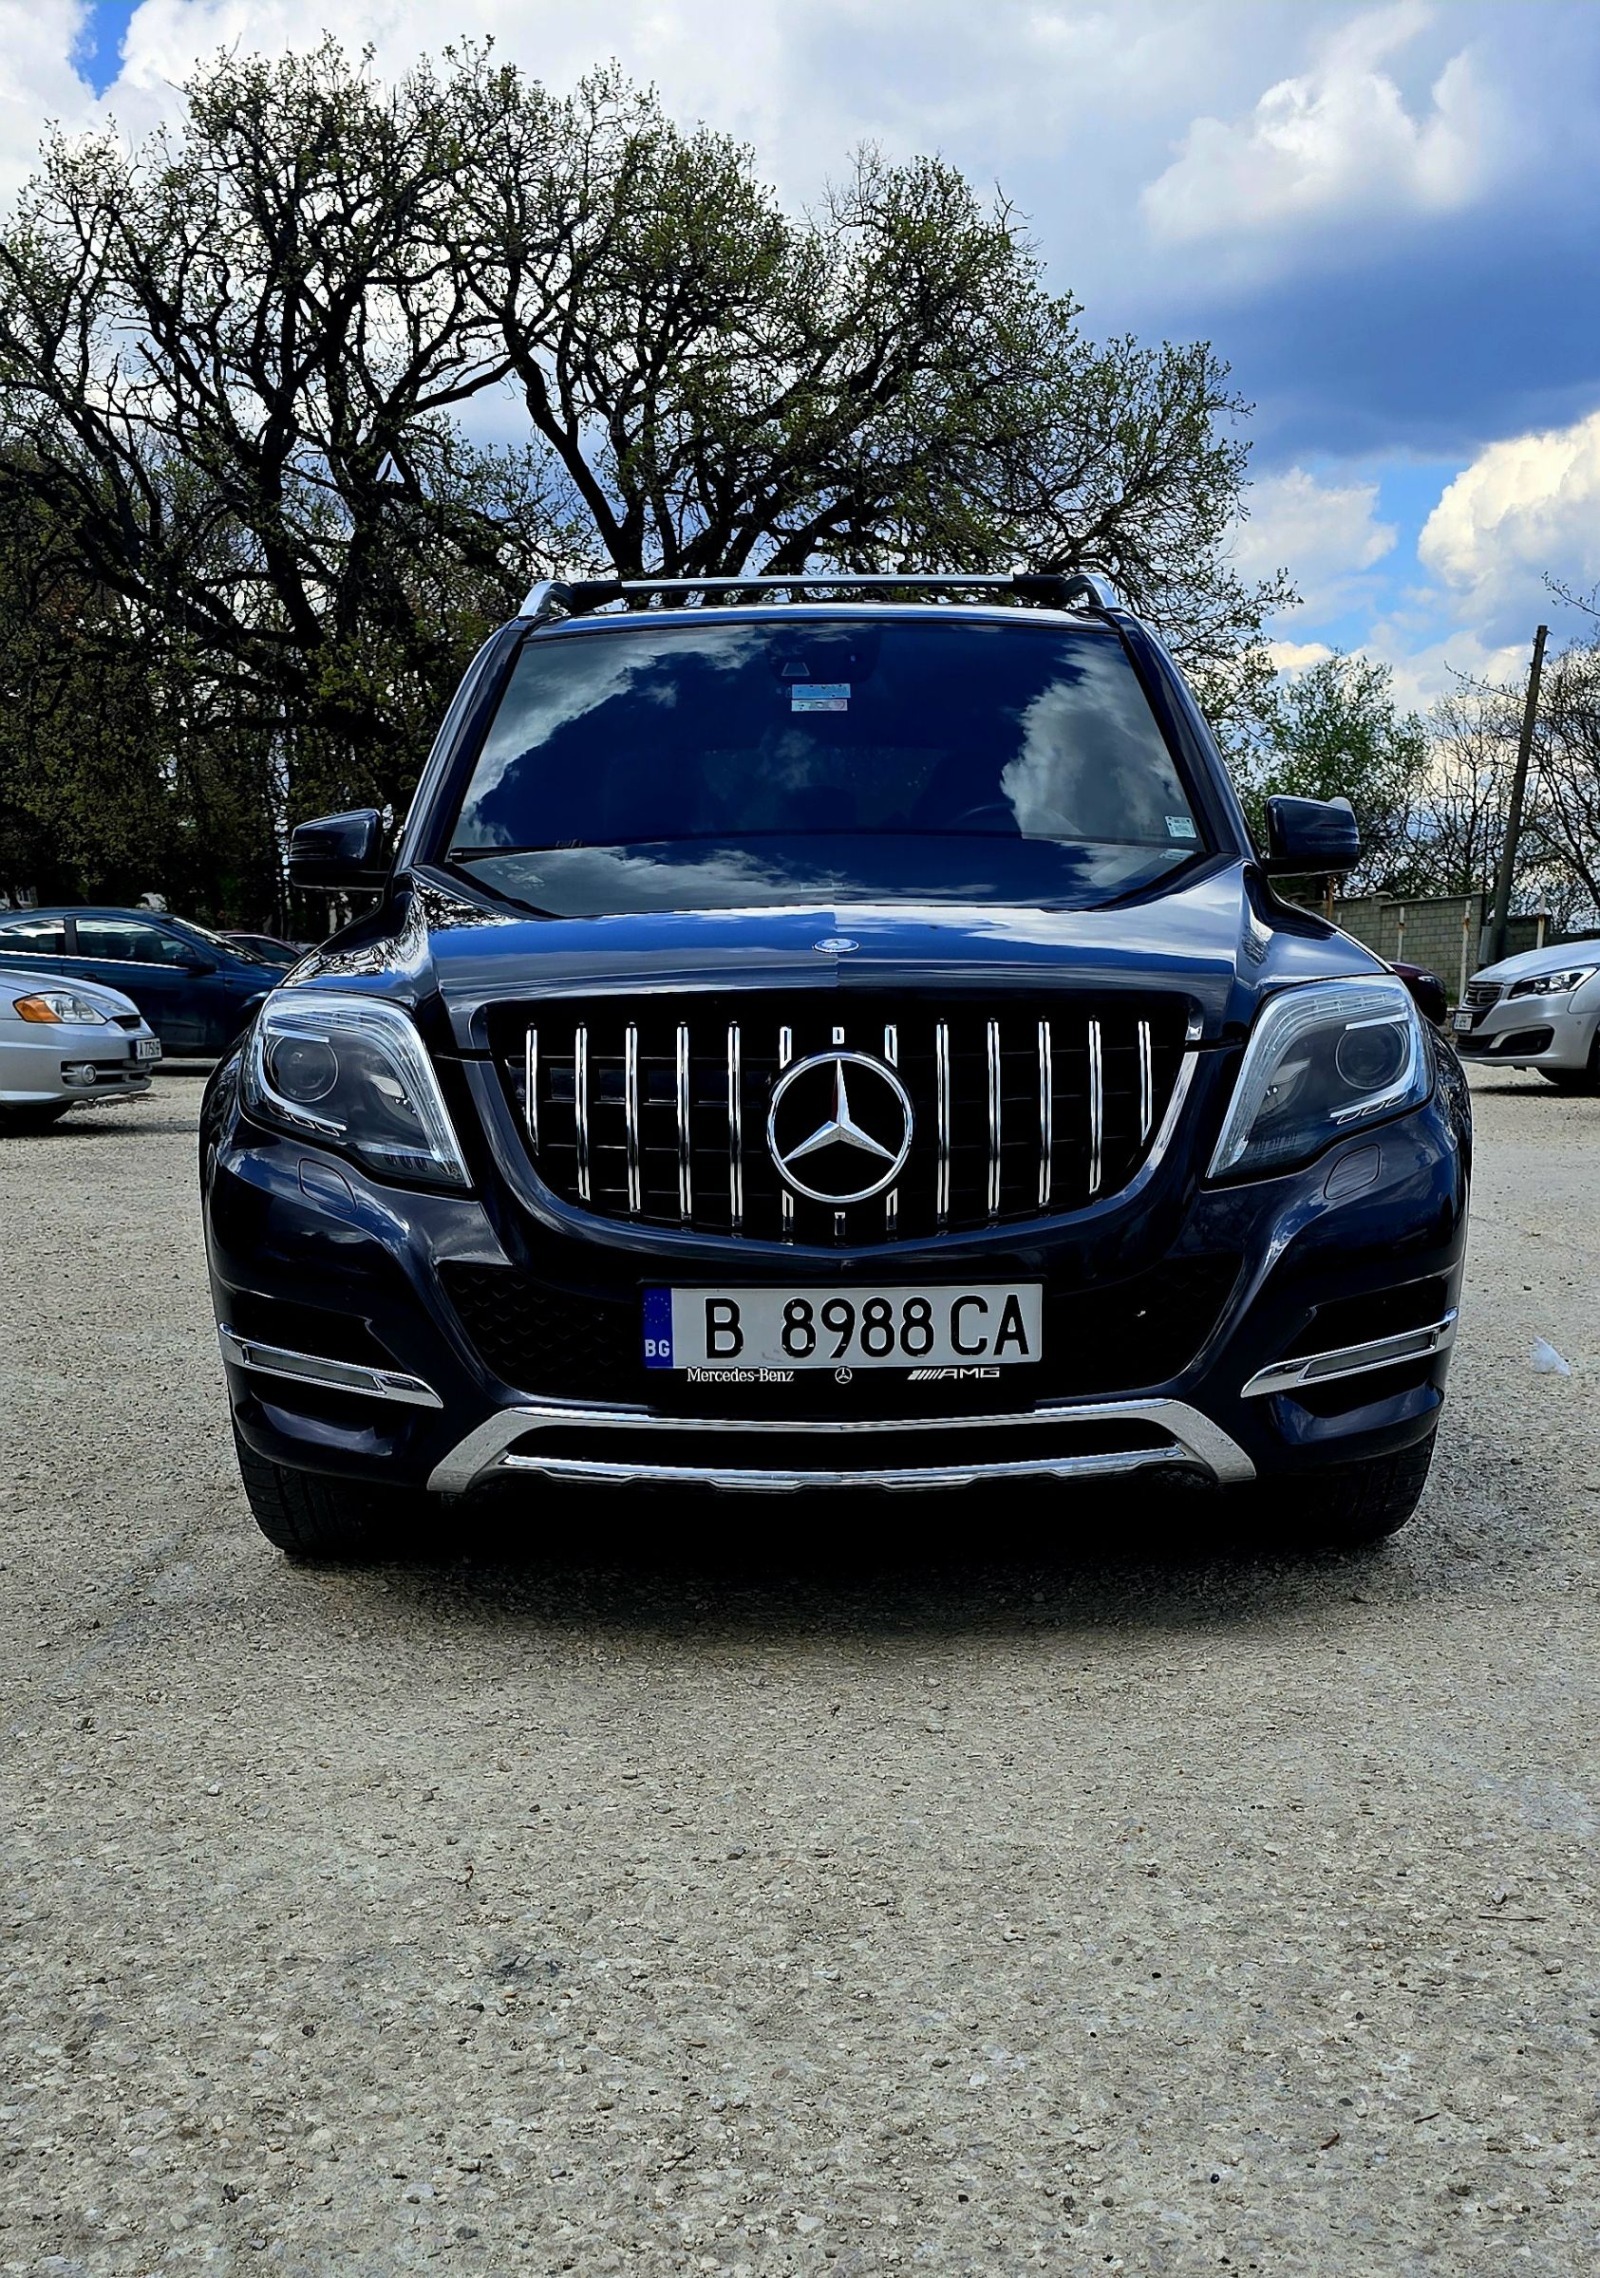 Mercedes-Benz GLK  - изображение 1